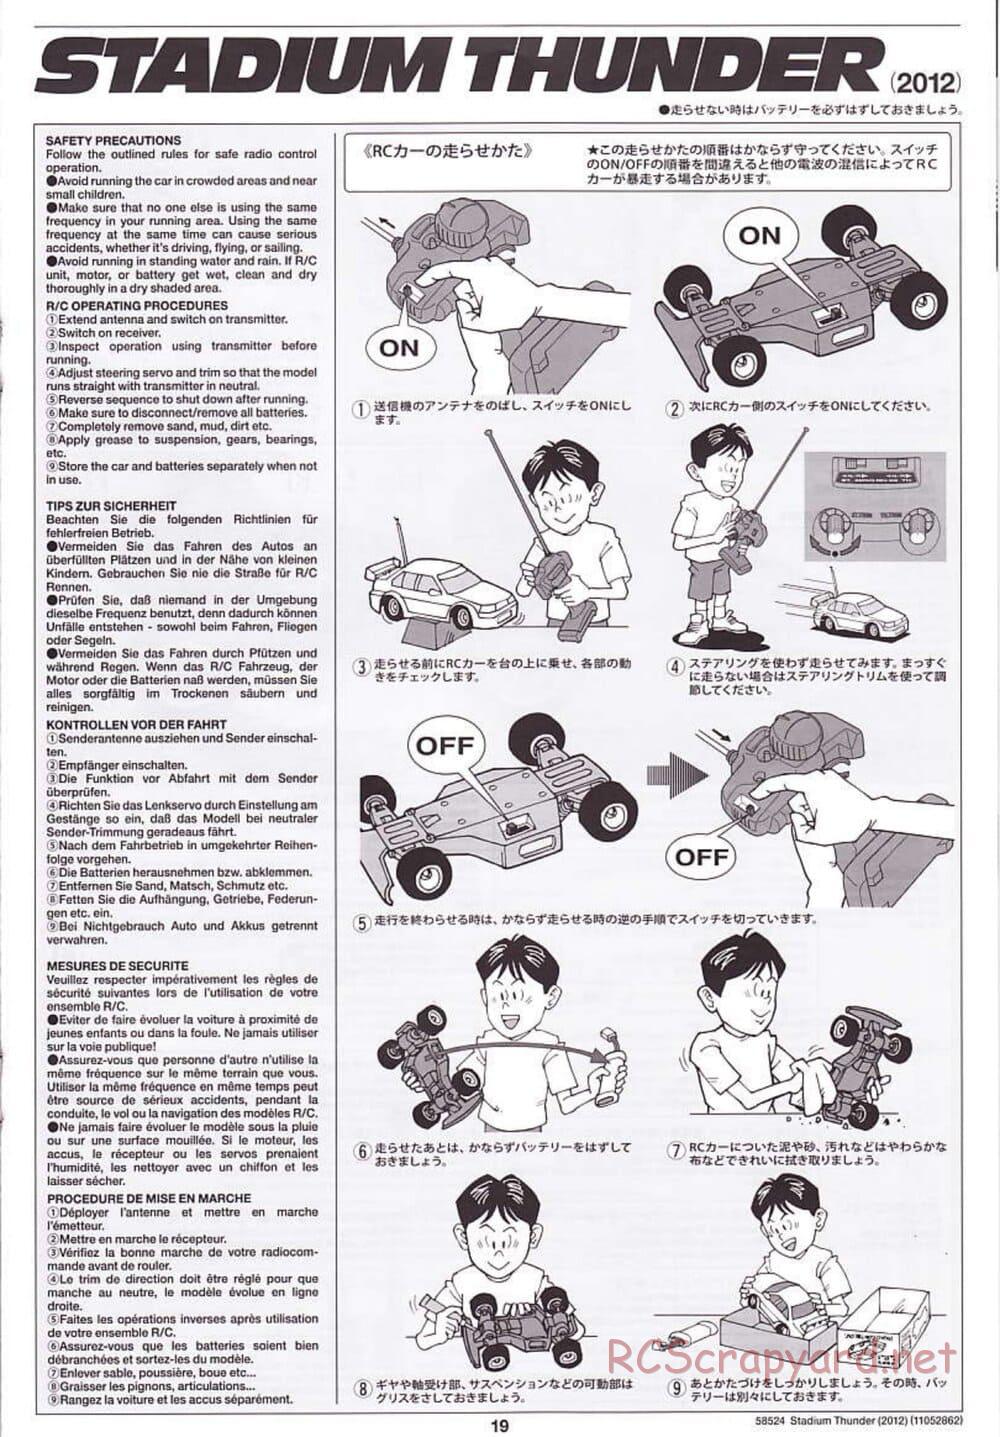 Tamiya - Stadium Thunder 2012 - FAL Chassis - Manual - Page 19